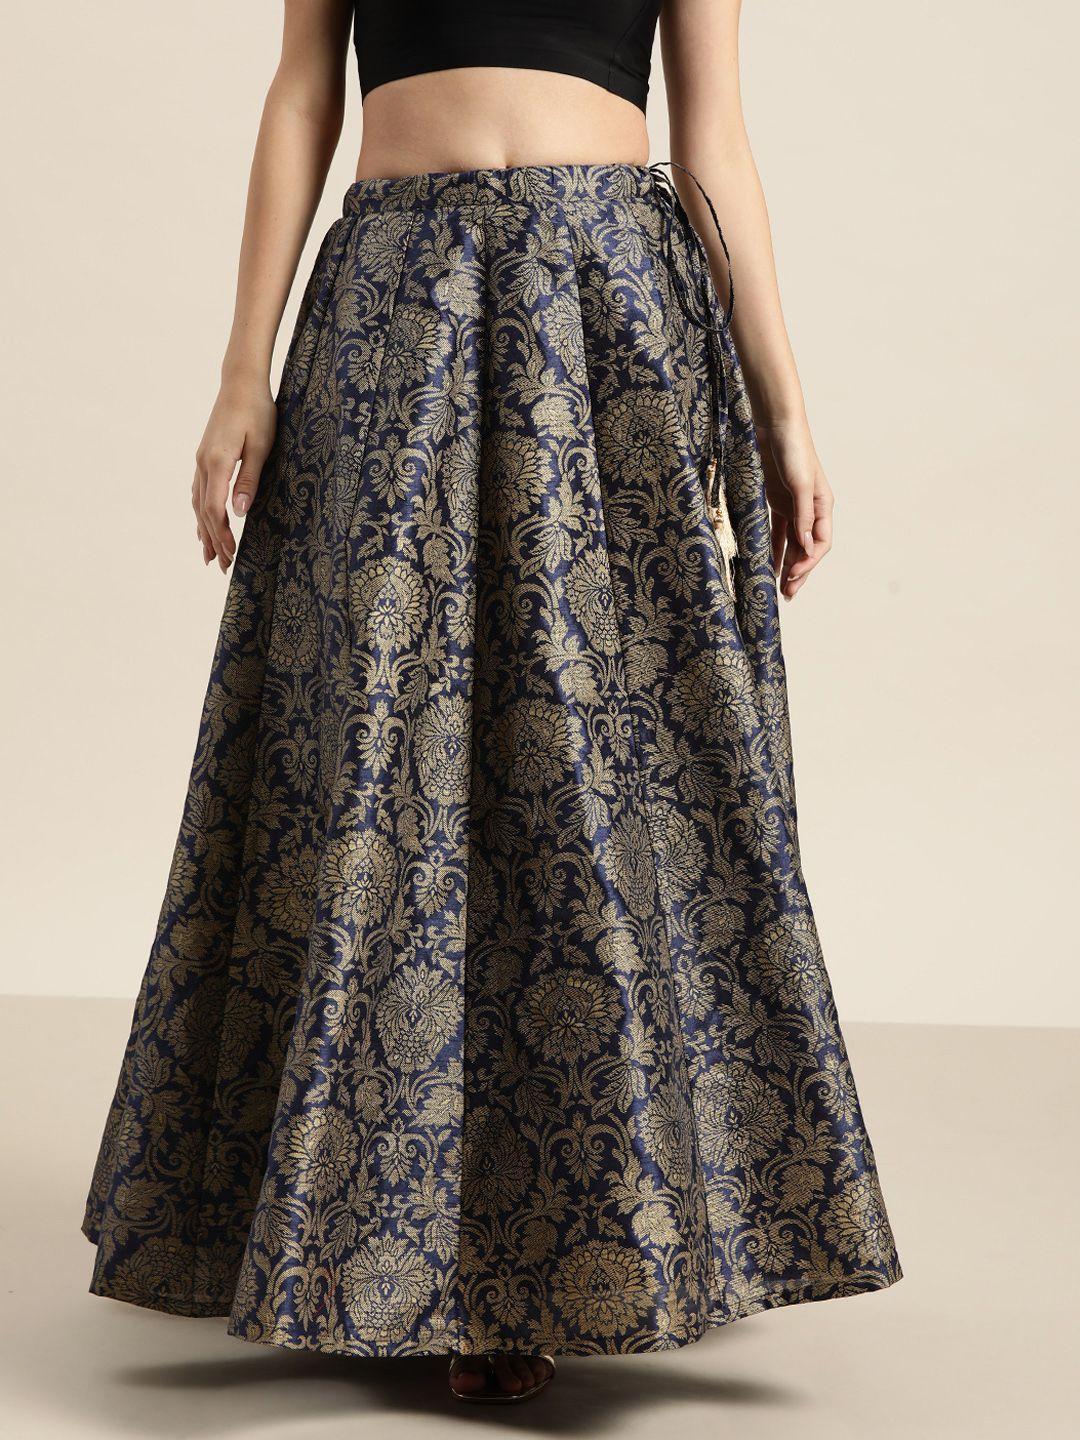 shae by sassafras women deep navy blue floral skirt